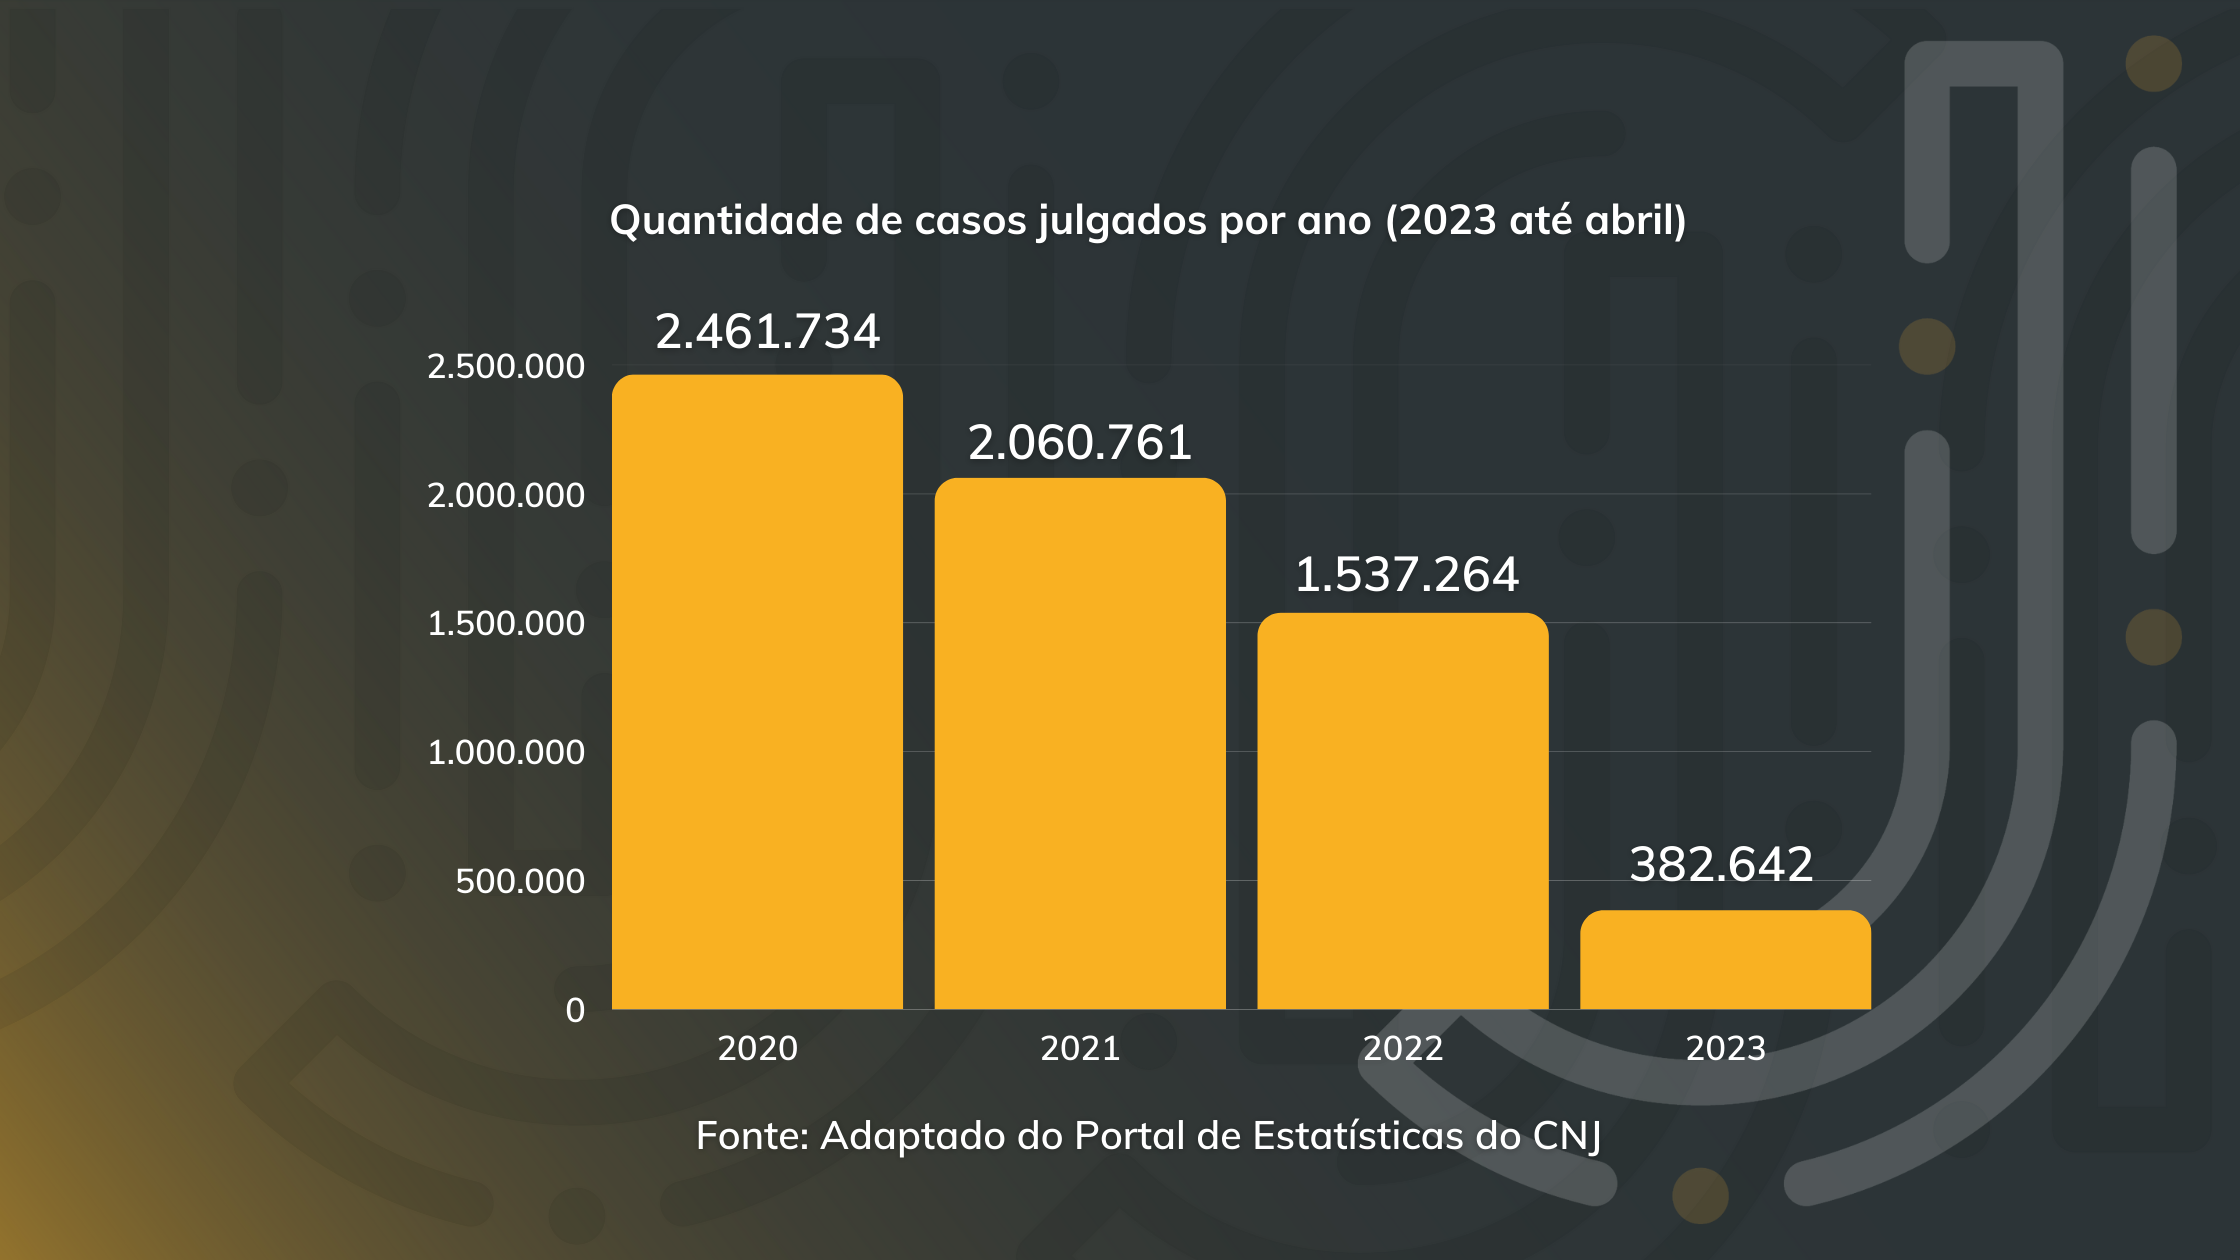 Quantidade de casos julgados no TJRJ nos anos de 2020, 2021, 2022 e 2023